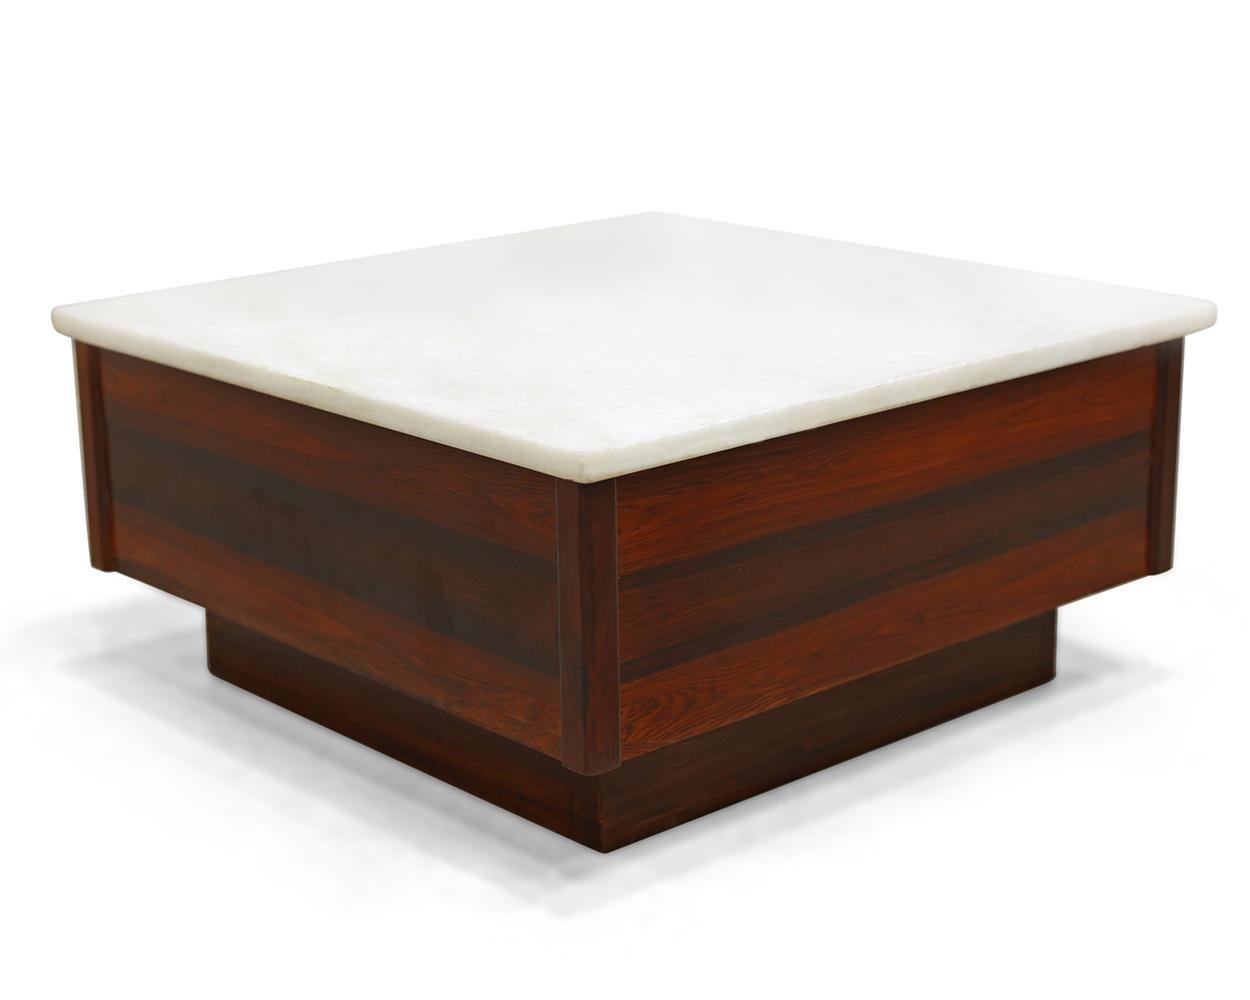 Disponible dès aujourd'hui à NYC avec livraison nationale gratuite, cette table basse moderne brésilienne en bois dur et plateau en marbre, de designers inconnus, fabriquée dans les années 60, n'est rien de moins qu'exquise !

Whiting présente une